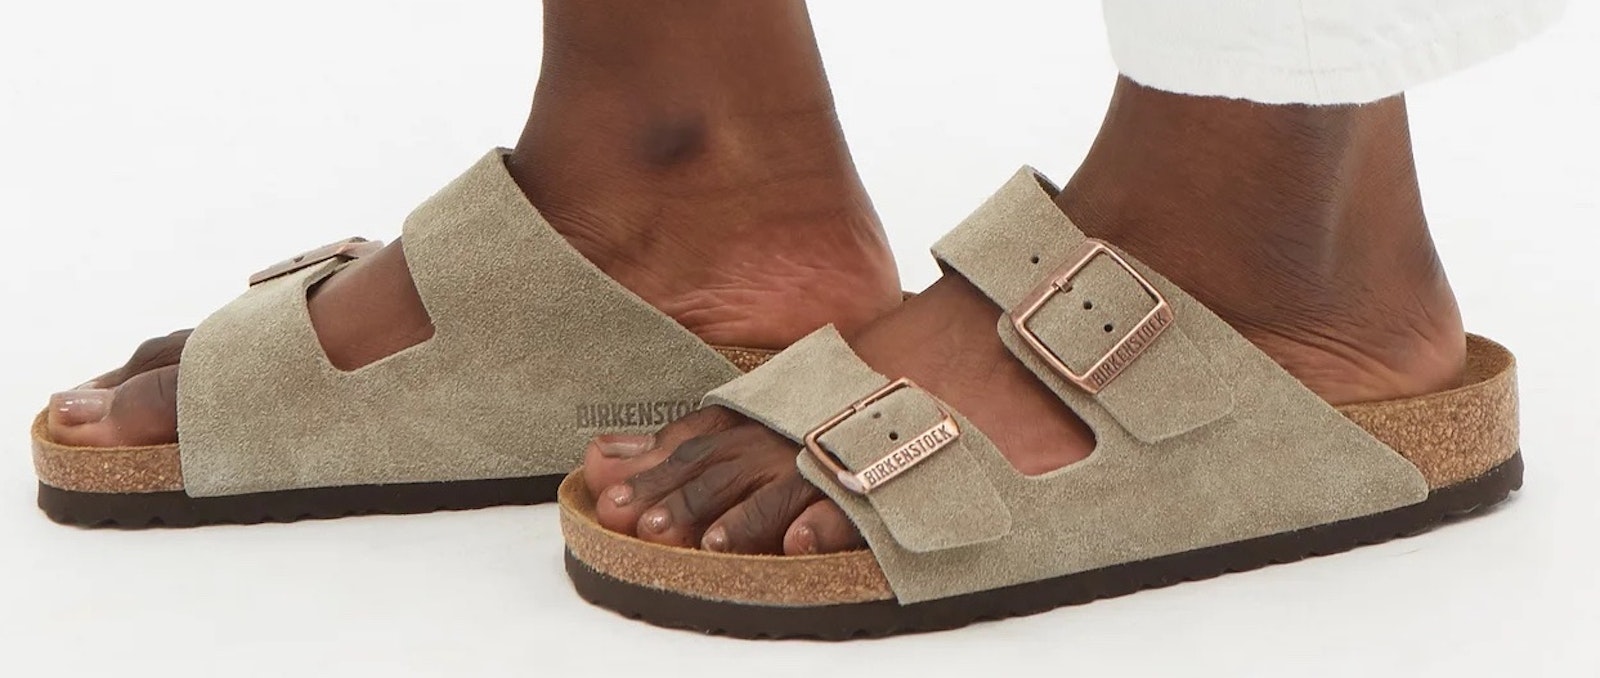 4 Sandal Trends